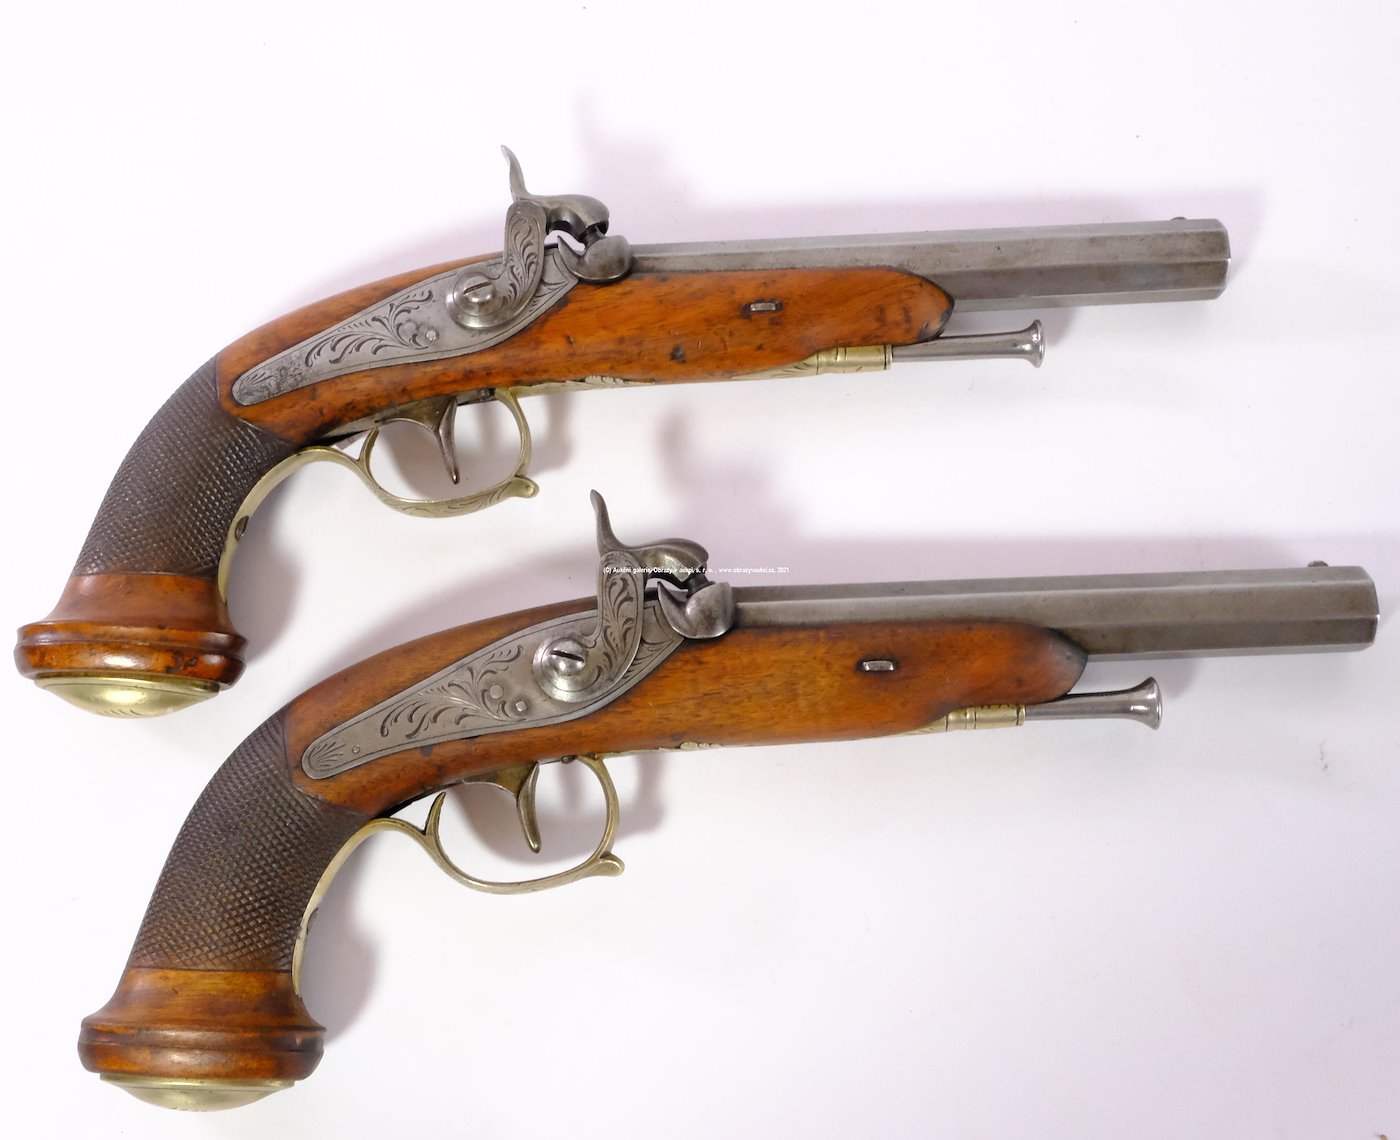 Belgie, po roce 1850 - Párové pistole perkusní